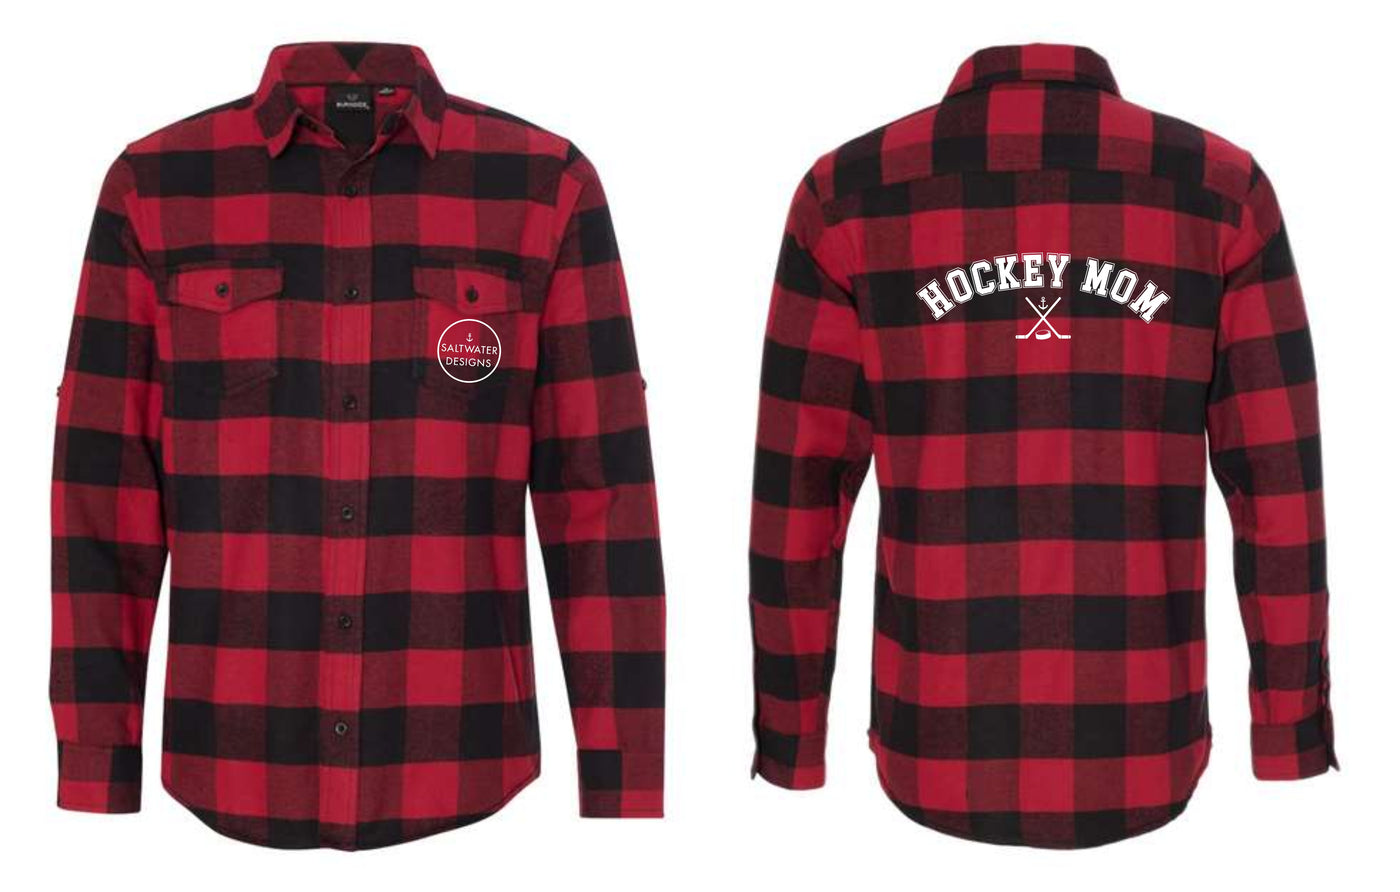 "Hockey Mom" Unisex Plaid Flannel Shirt